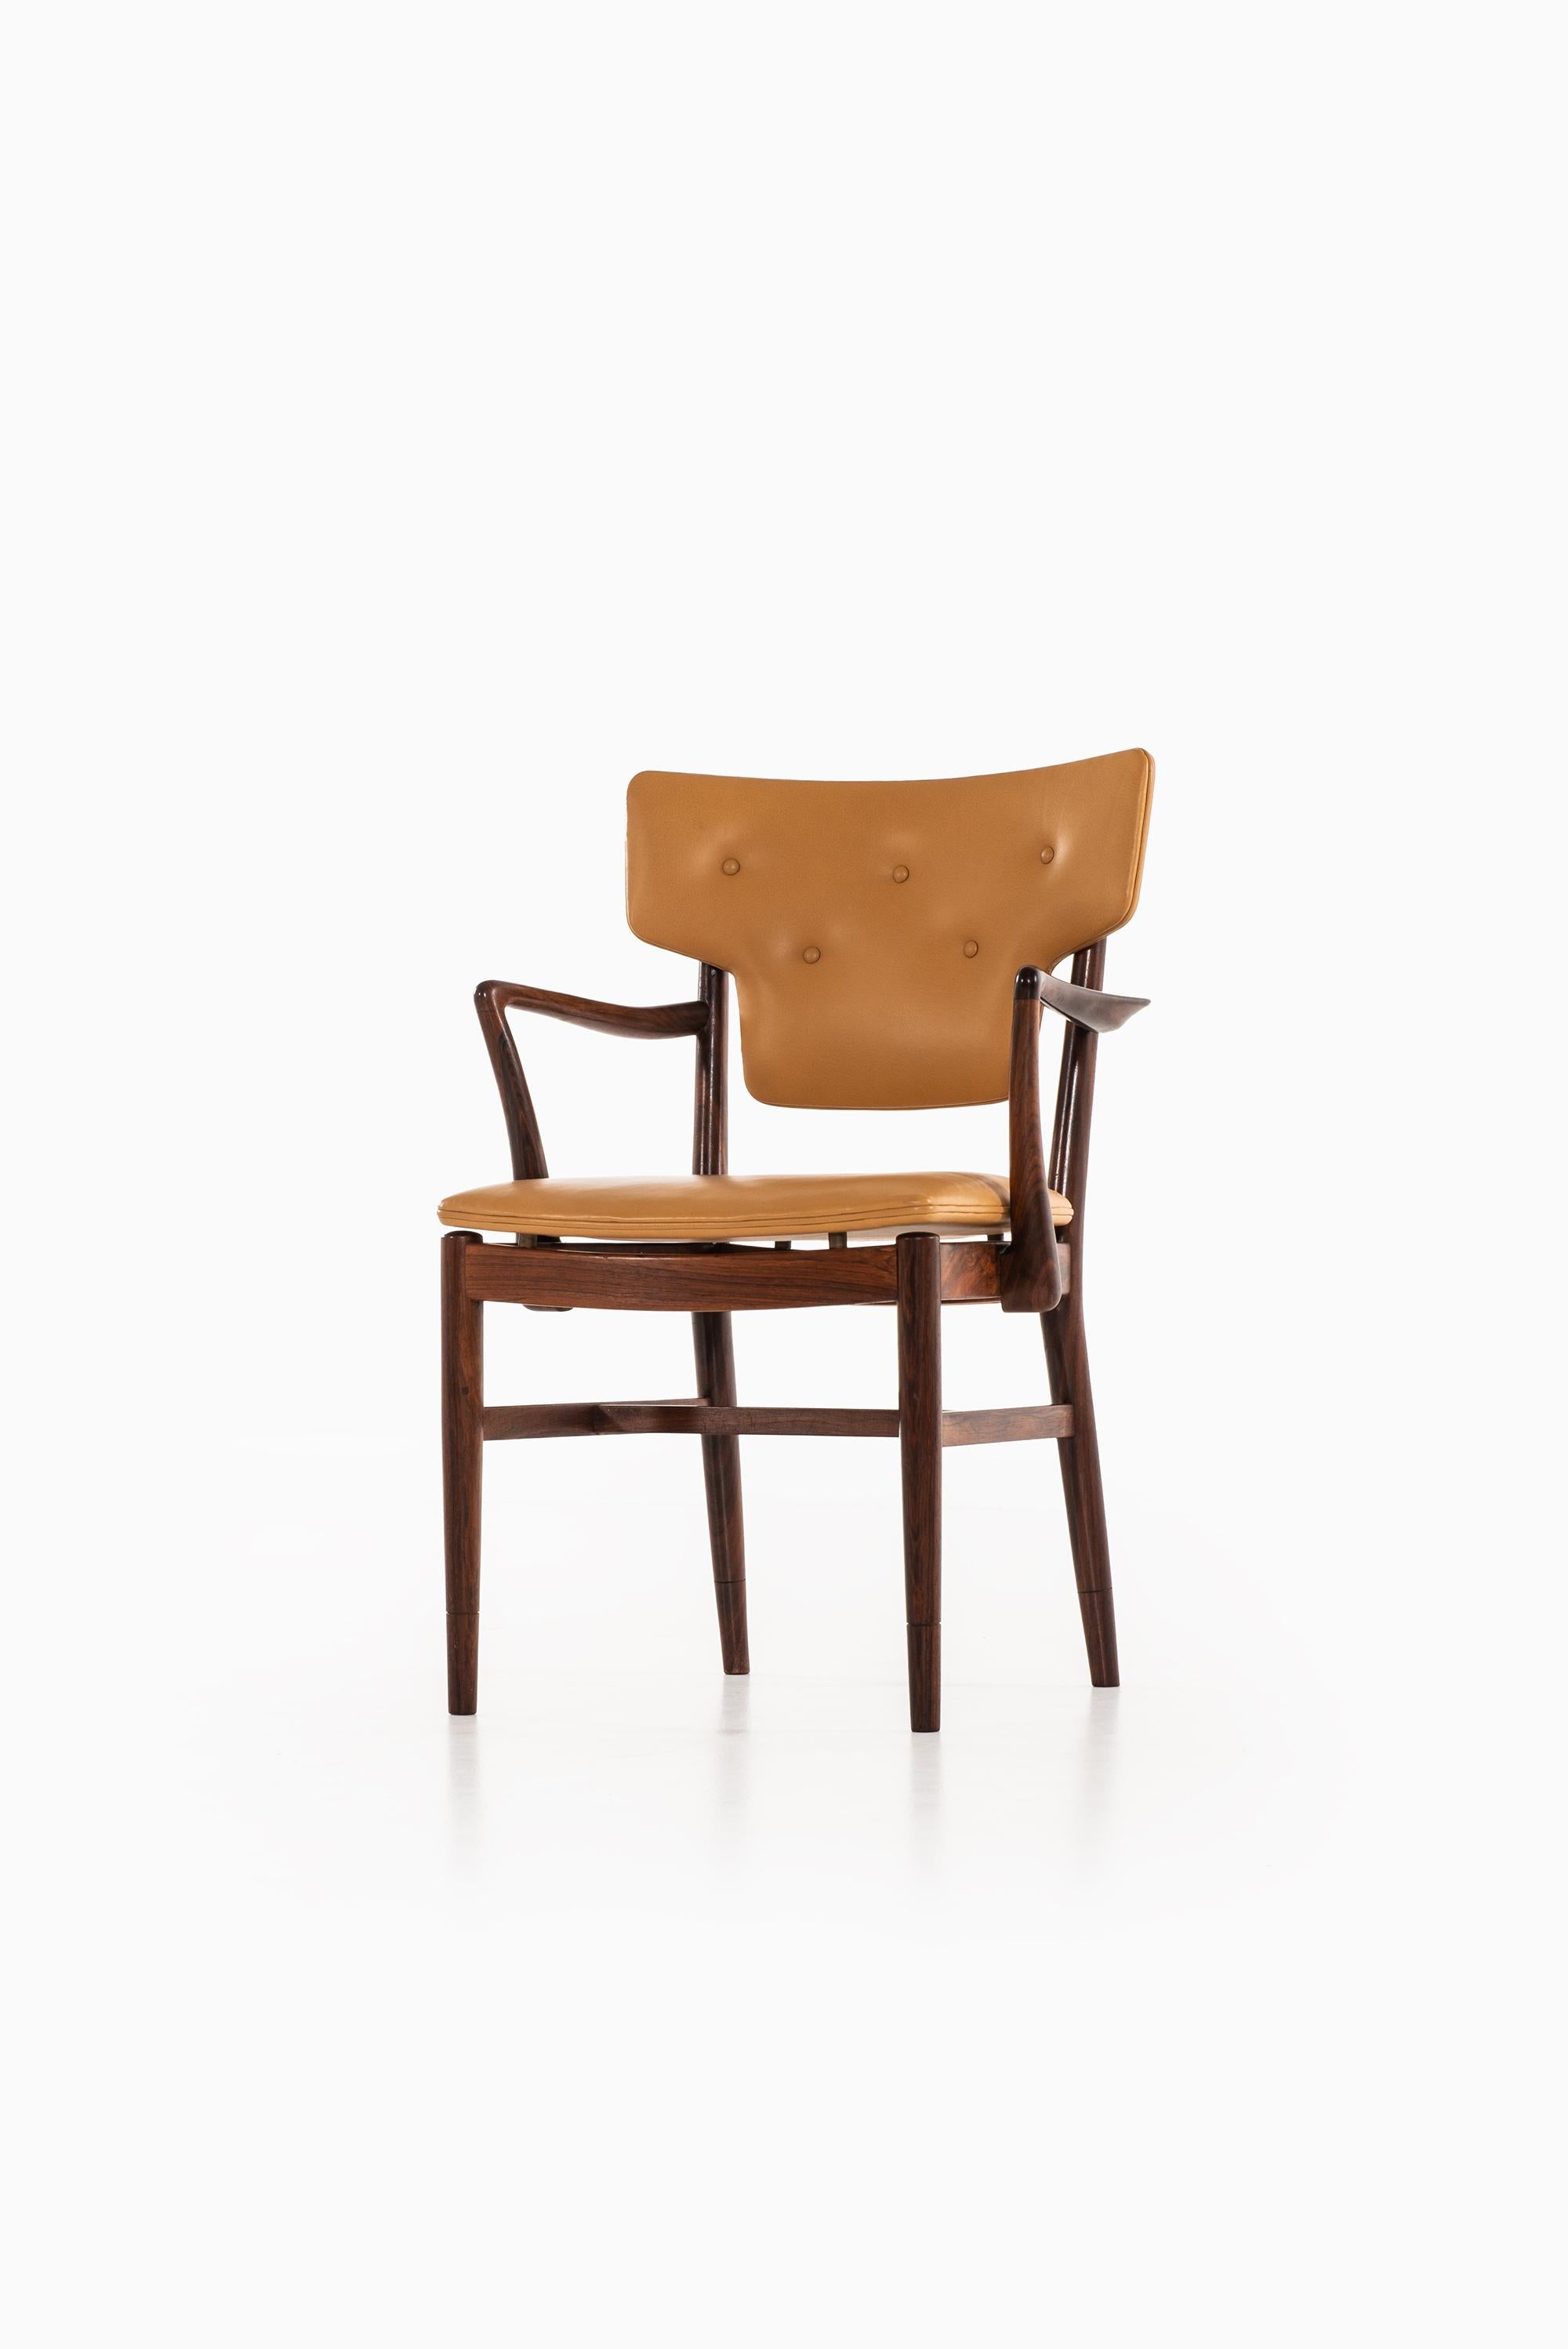 Sehr seltener Sessel, der Acton Bjørn & Vilhelm Lauritzen zugeschrieben wird. Hergestellt von der Tischlerei Willy Beck in Dänemark.